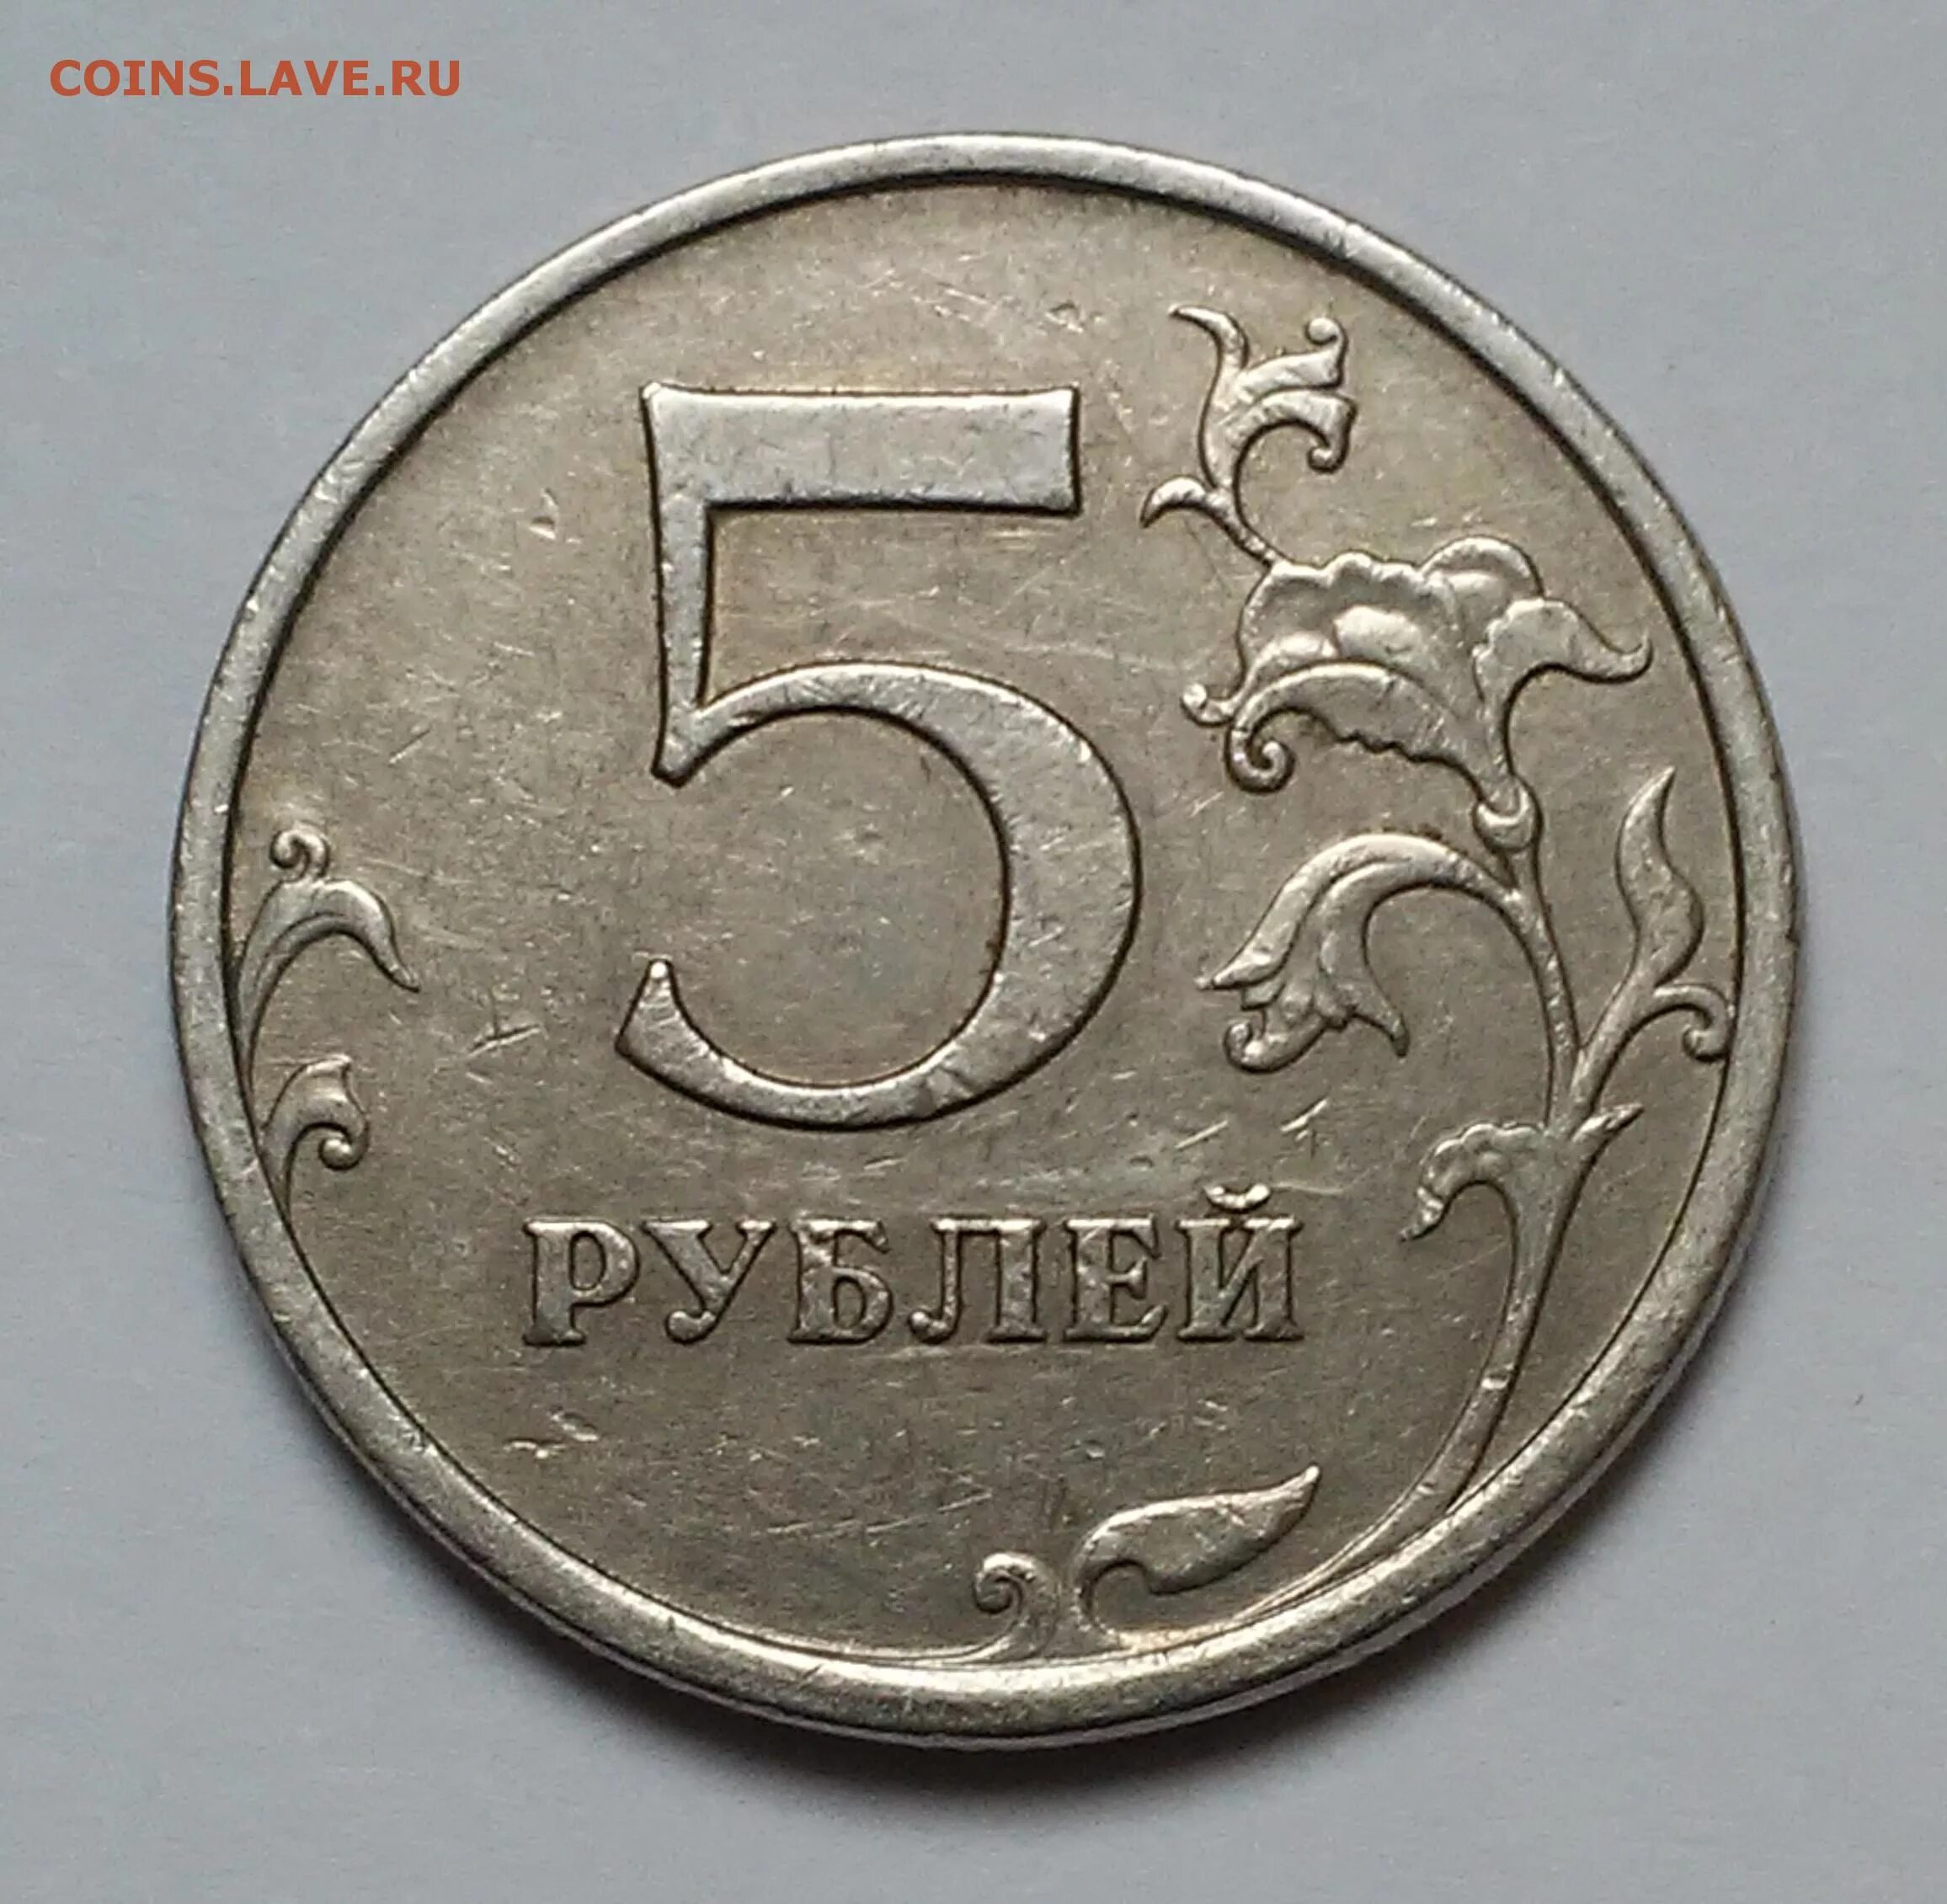 Монета 5 рублей 2003 года. Есть 5 рублей. Пять и десять рублей 1997 года. 75 рублей 30